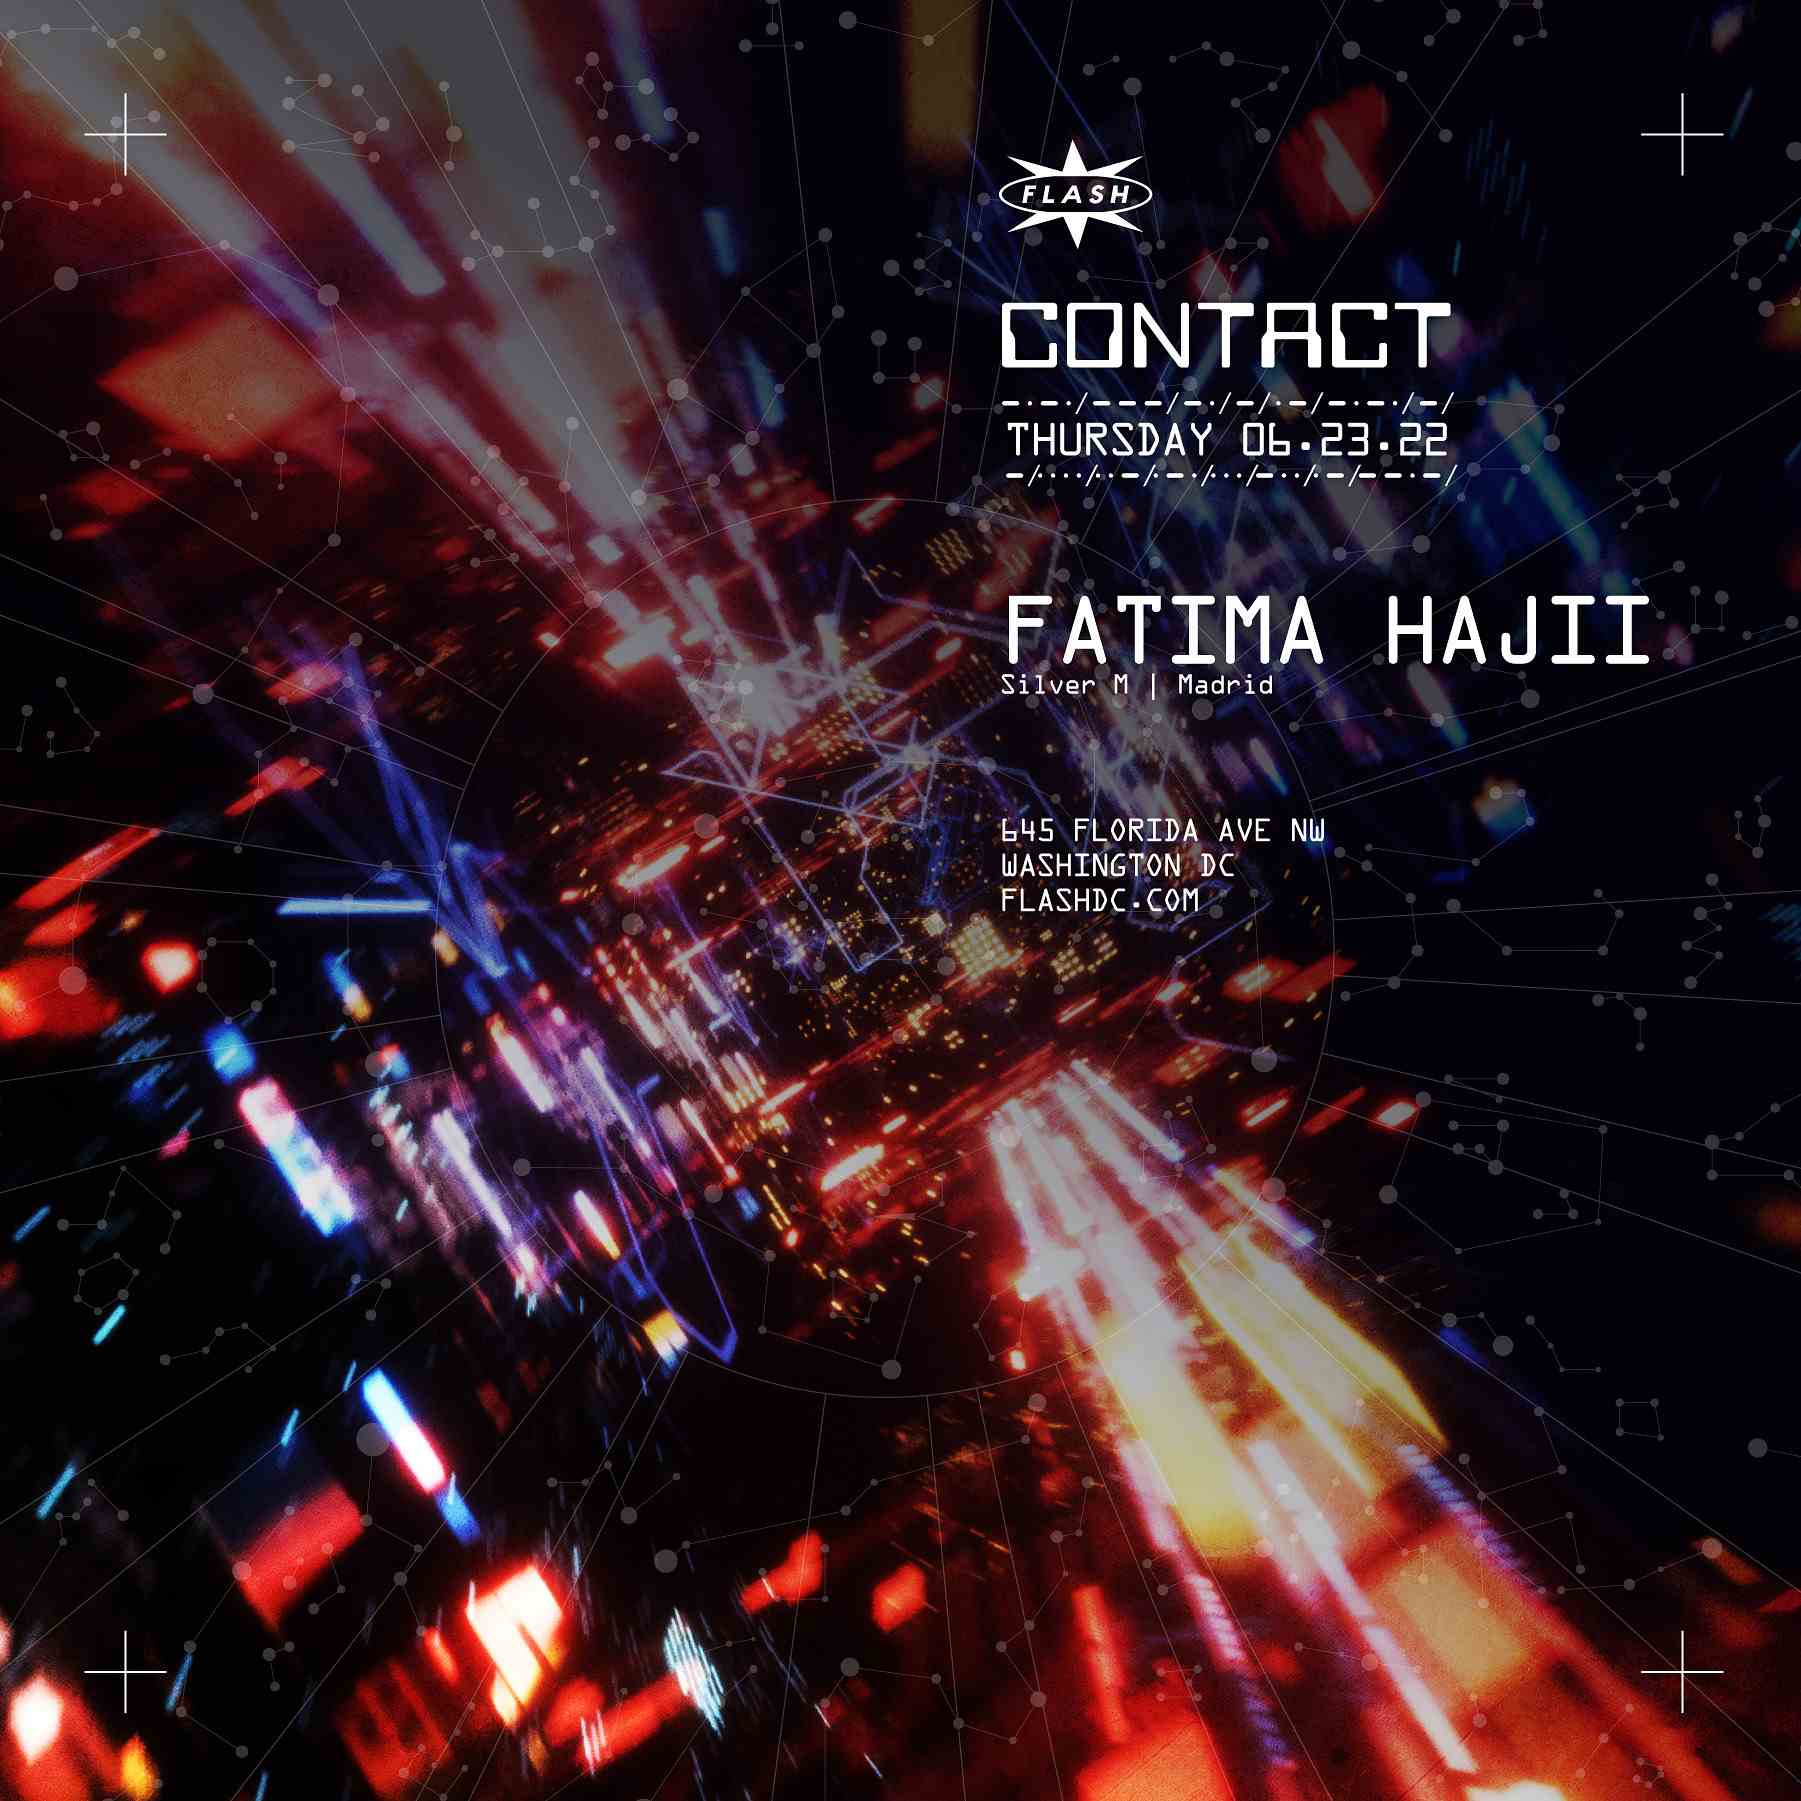 CONTACT: Fatima Hajji event thumbnail